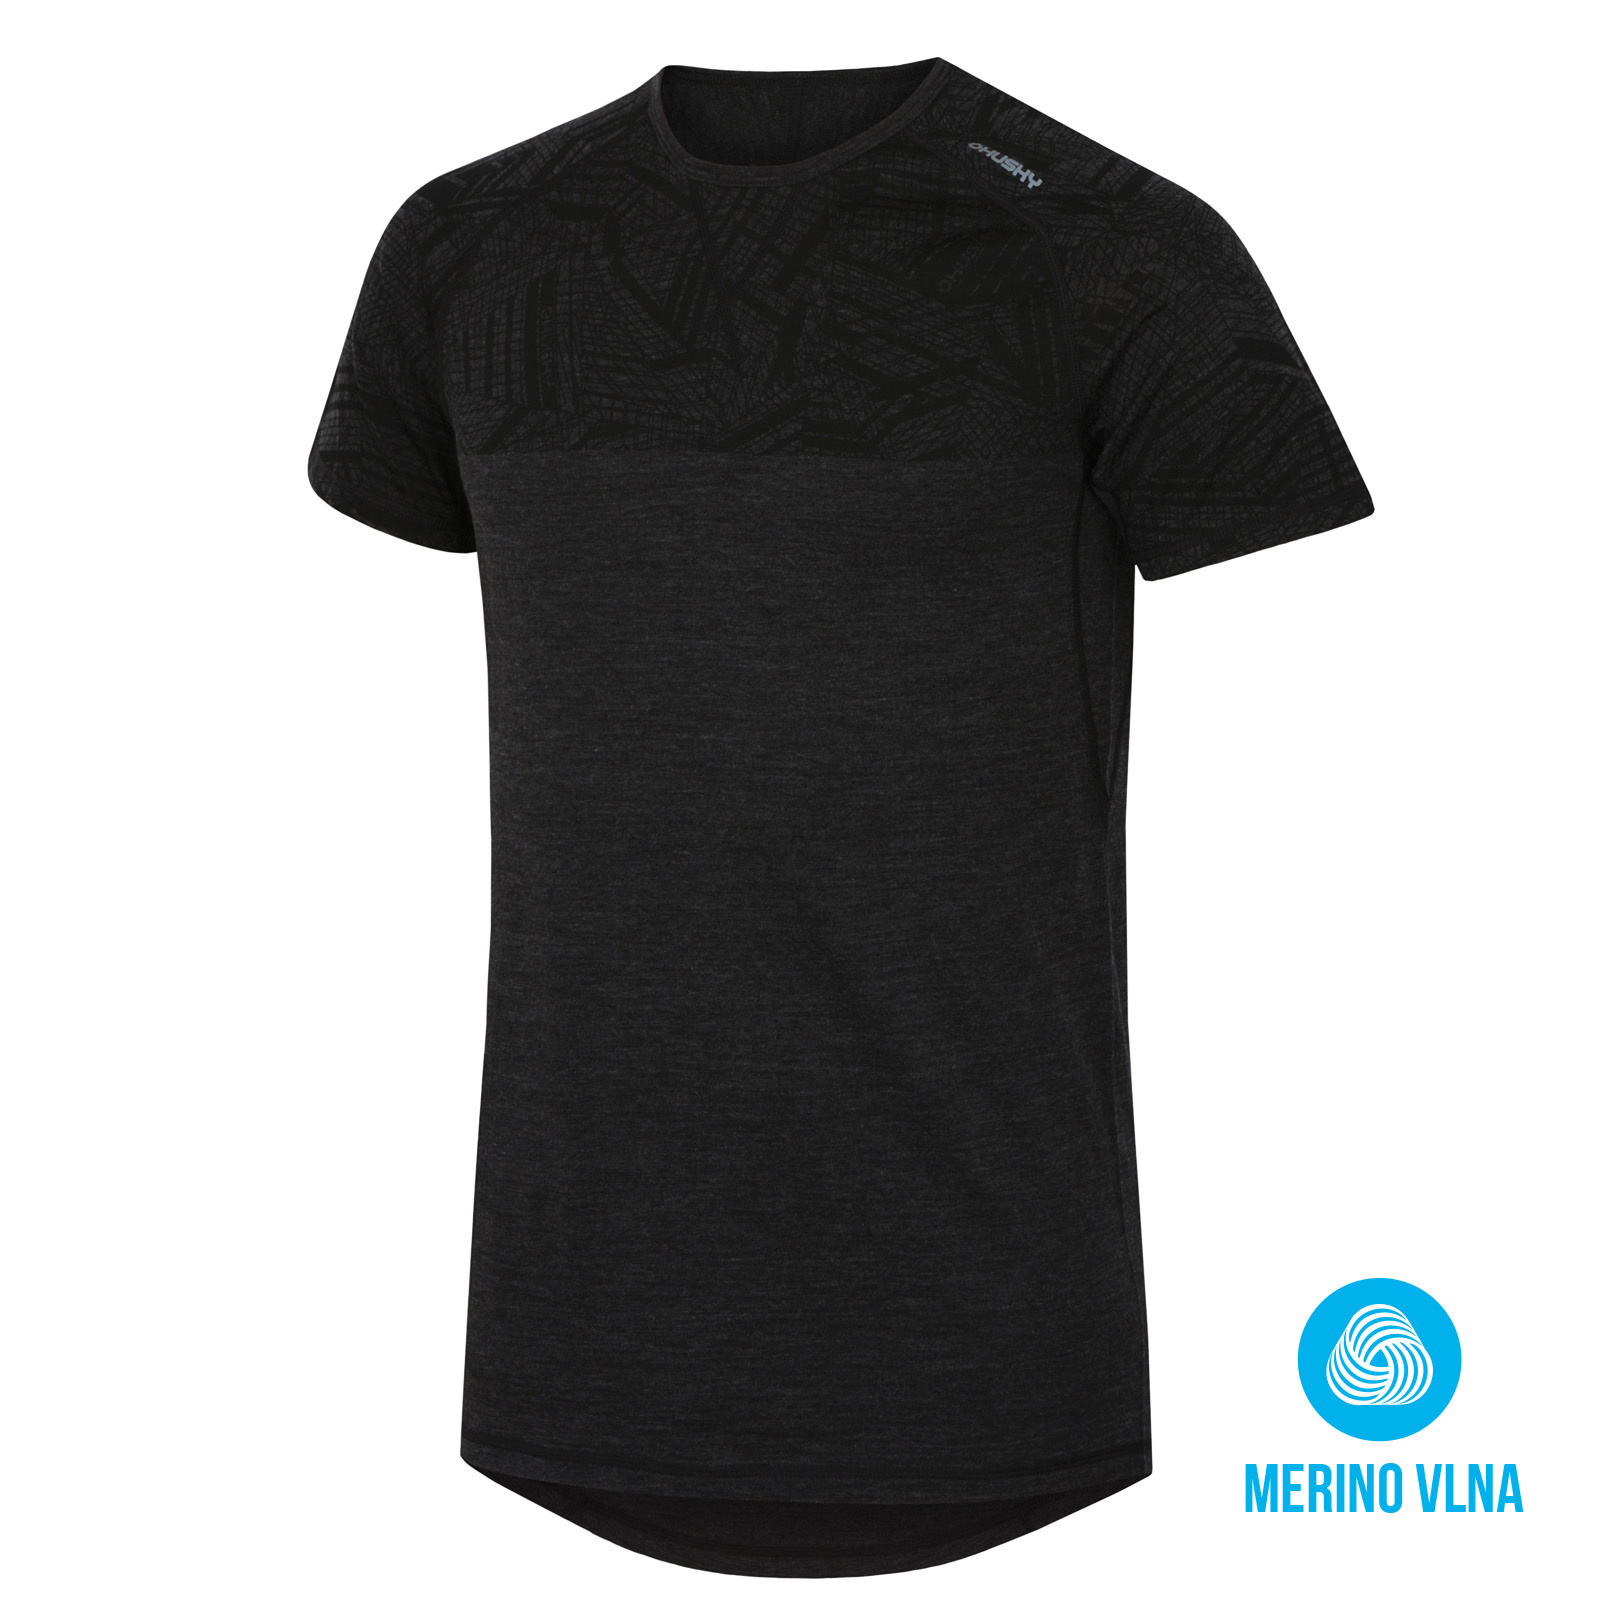 Husky Merino termoprádlo Pánské triko s krátkým rukávem černá Velikost: XL spodní prádlo